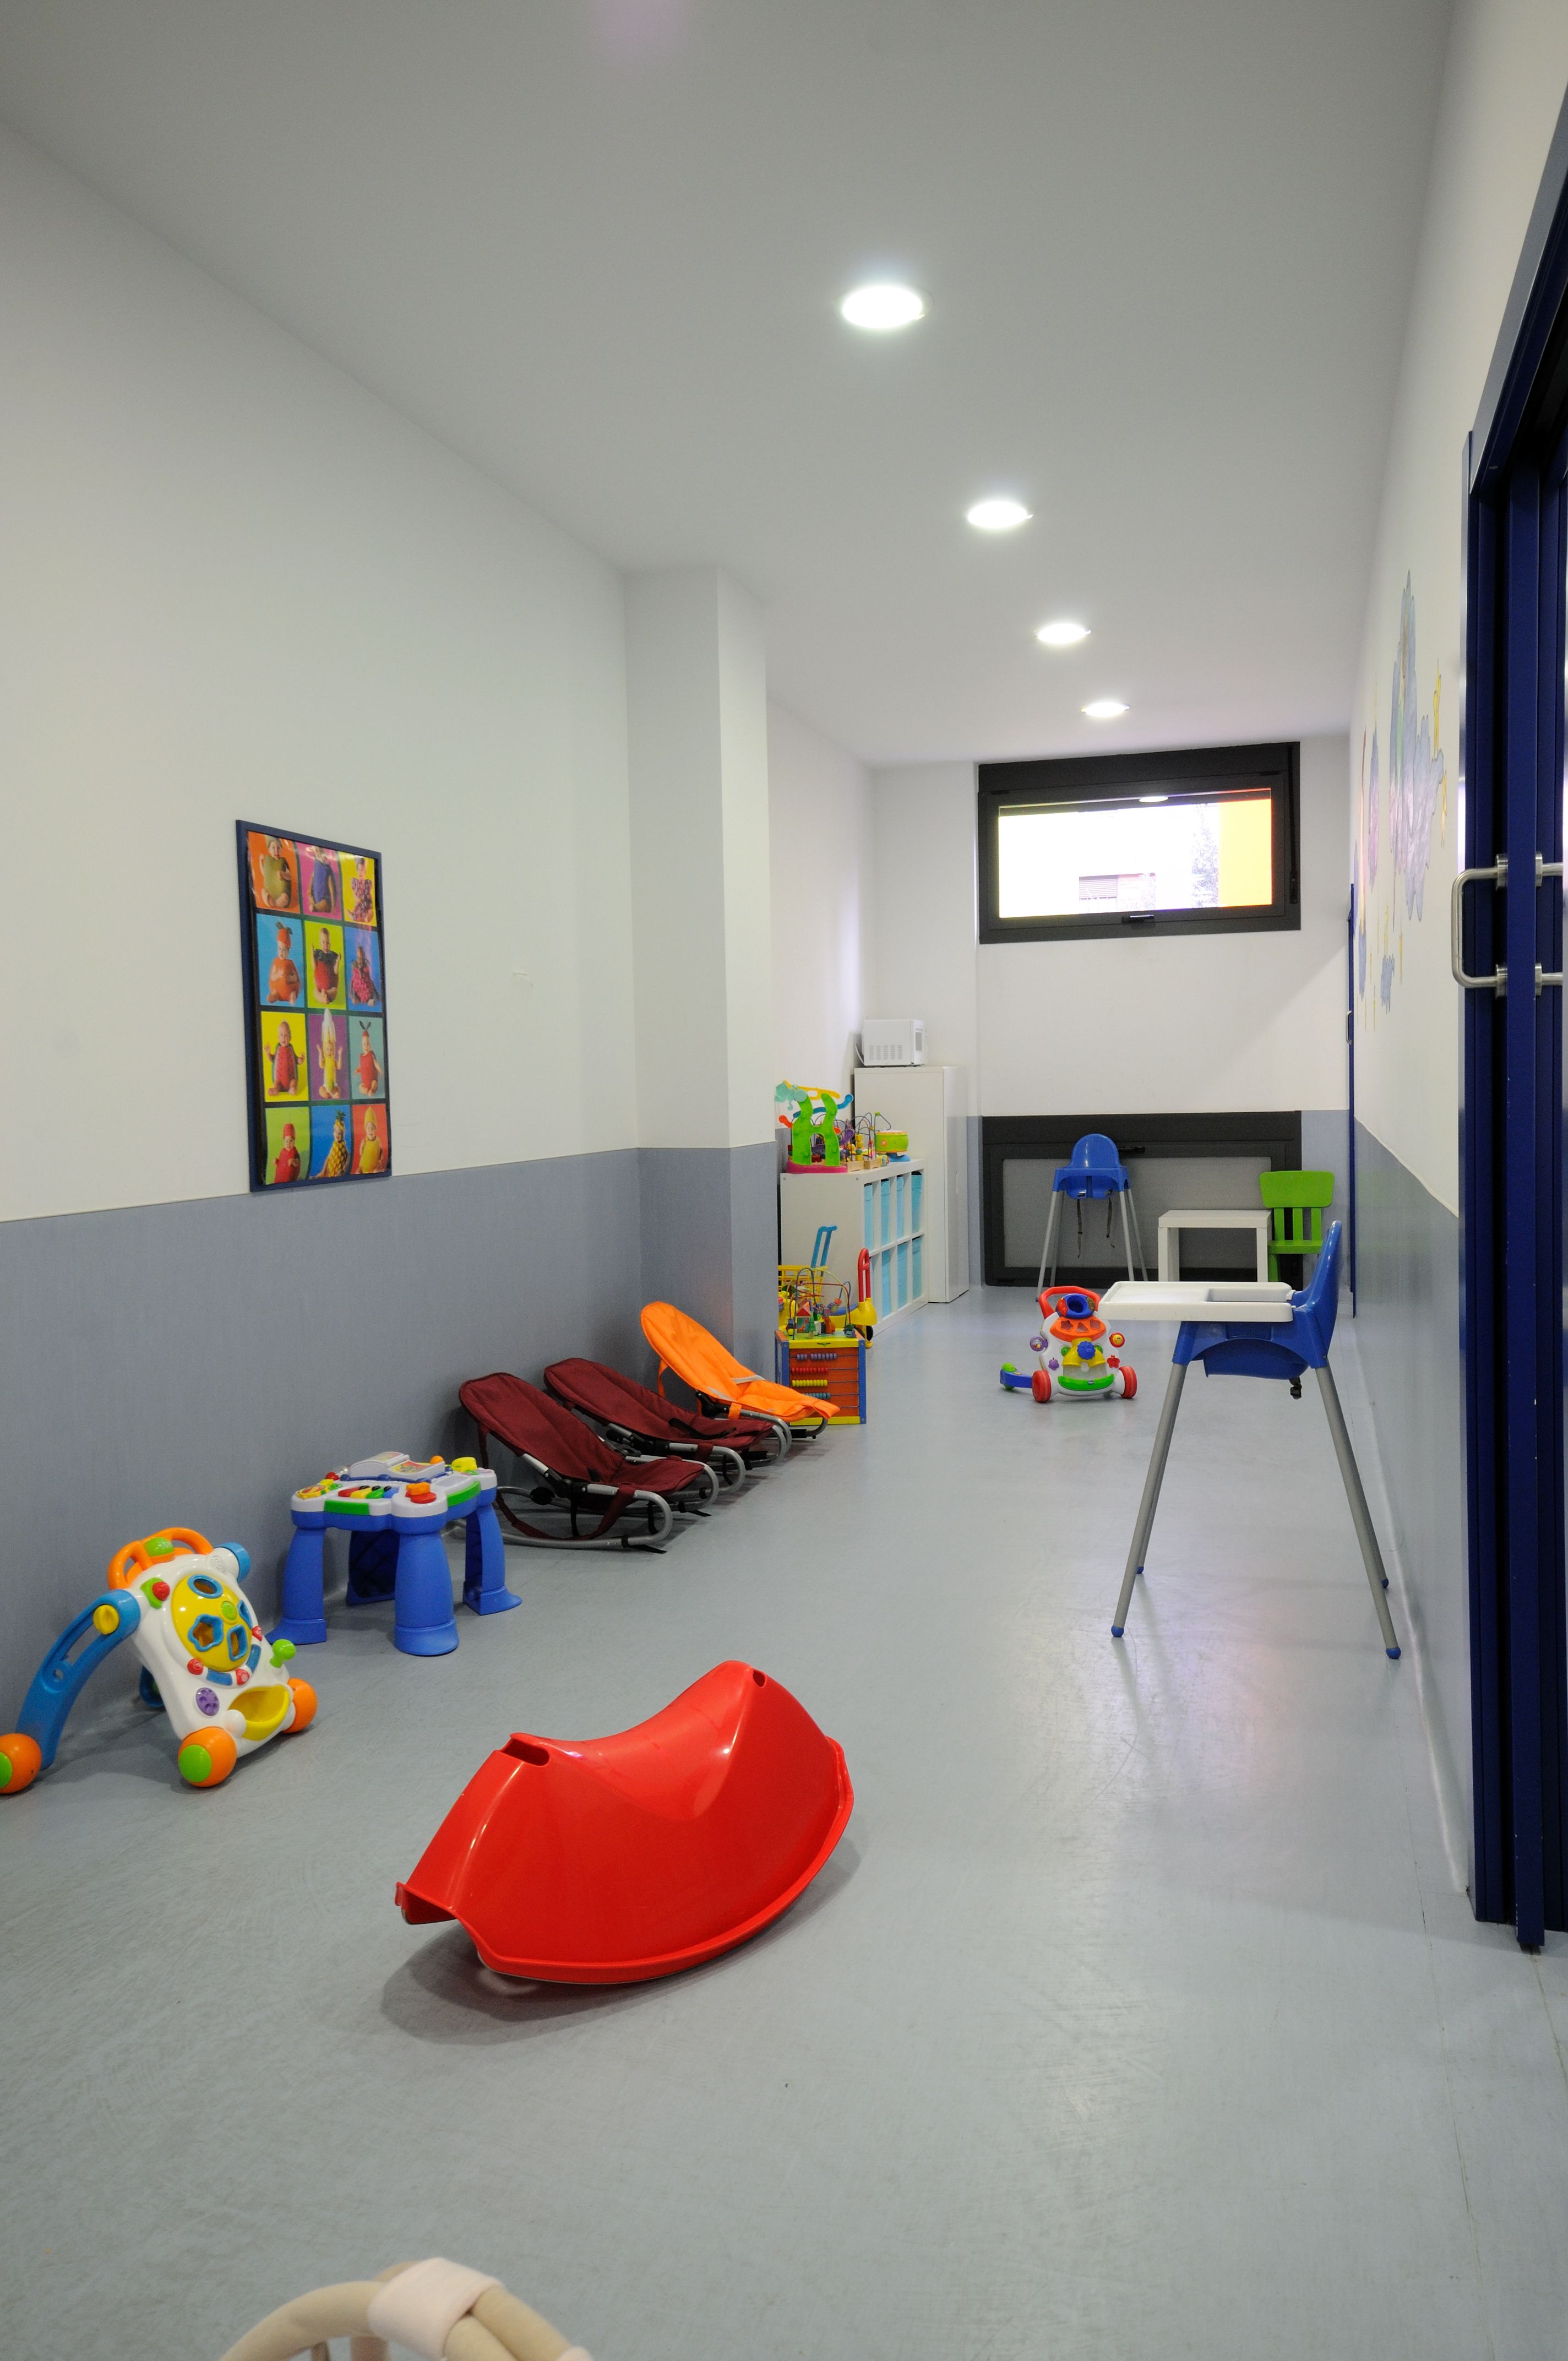 Foto 15 de Guarderías y Escuelas infantiles en Pamplona | Baby School